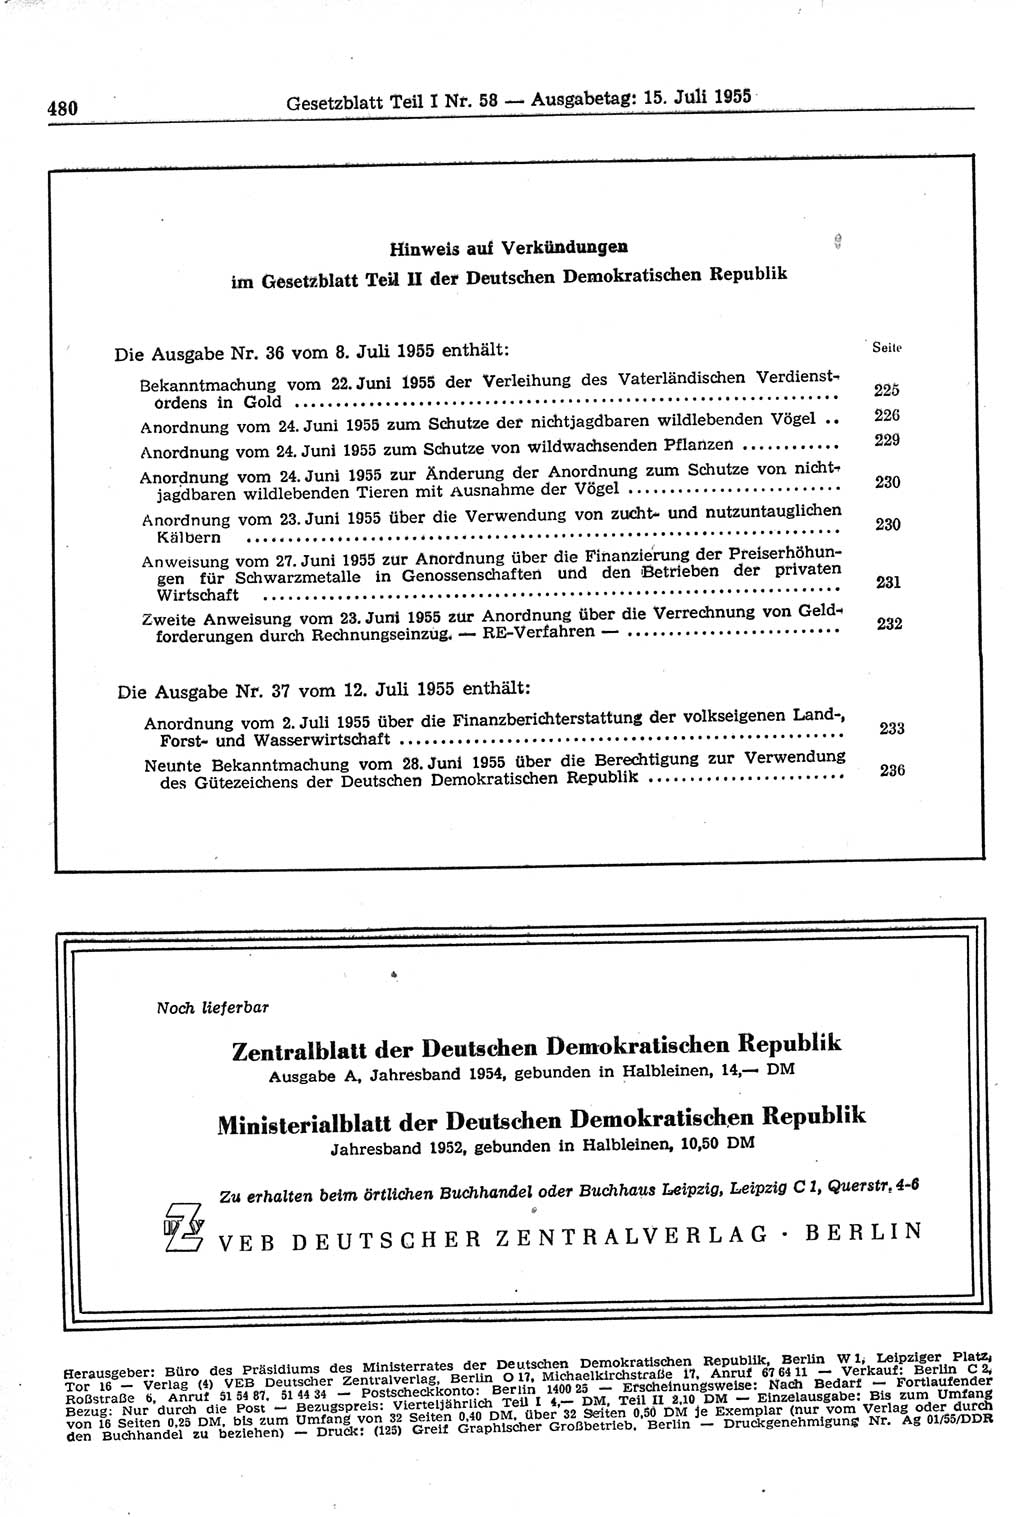 Gesetzblatt (GBl.) der Deutschen Demokratischen Republik (DDR) Teil Ⅰ 1955, Seite 480 (GBl. DDR Ⅰ 1955, S. 480)